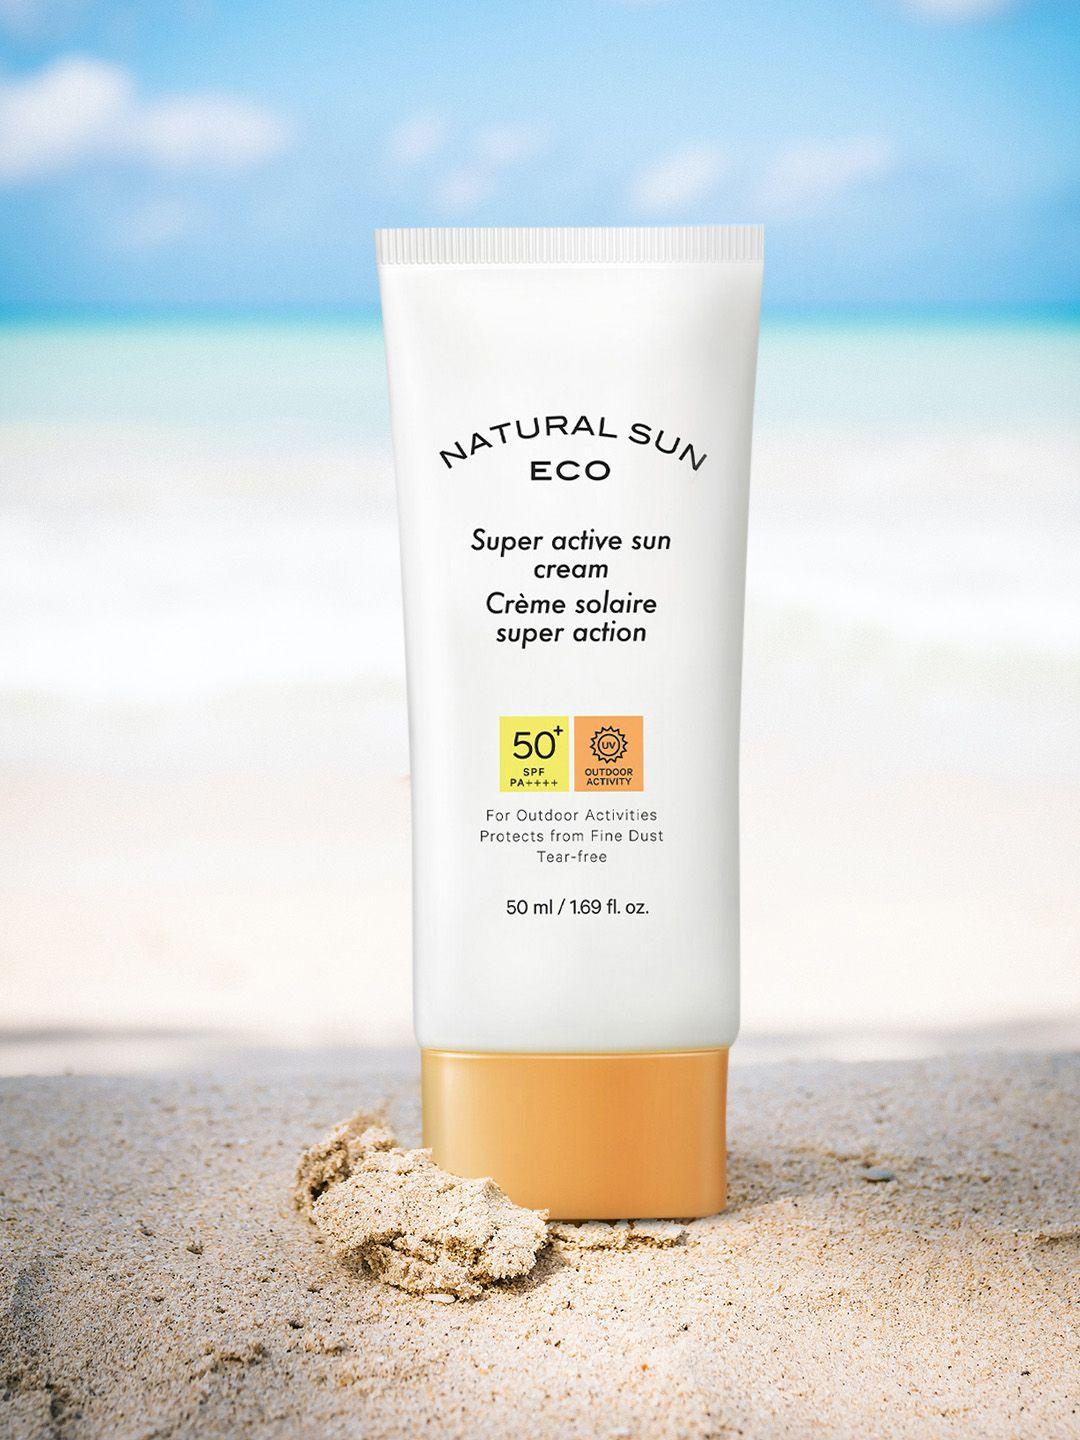 The Face Shop Natural Sun Eco Super Active SPF 50+ PA++++ Sun Cream - 50 ml